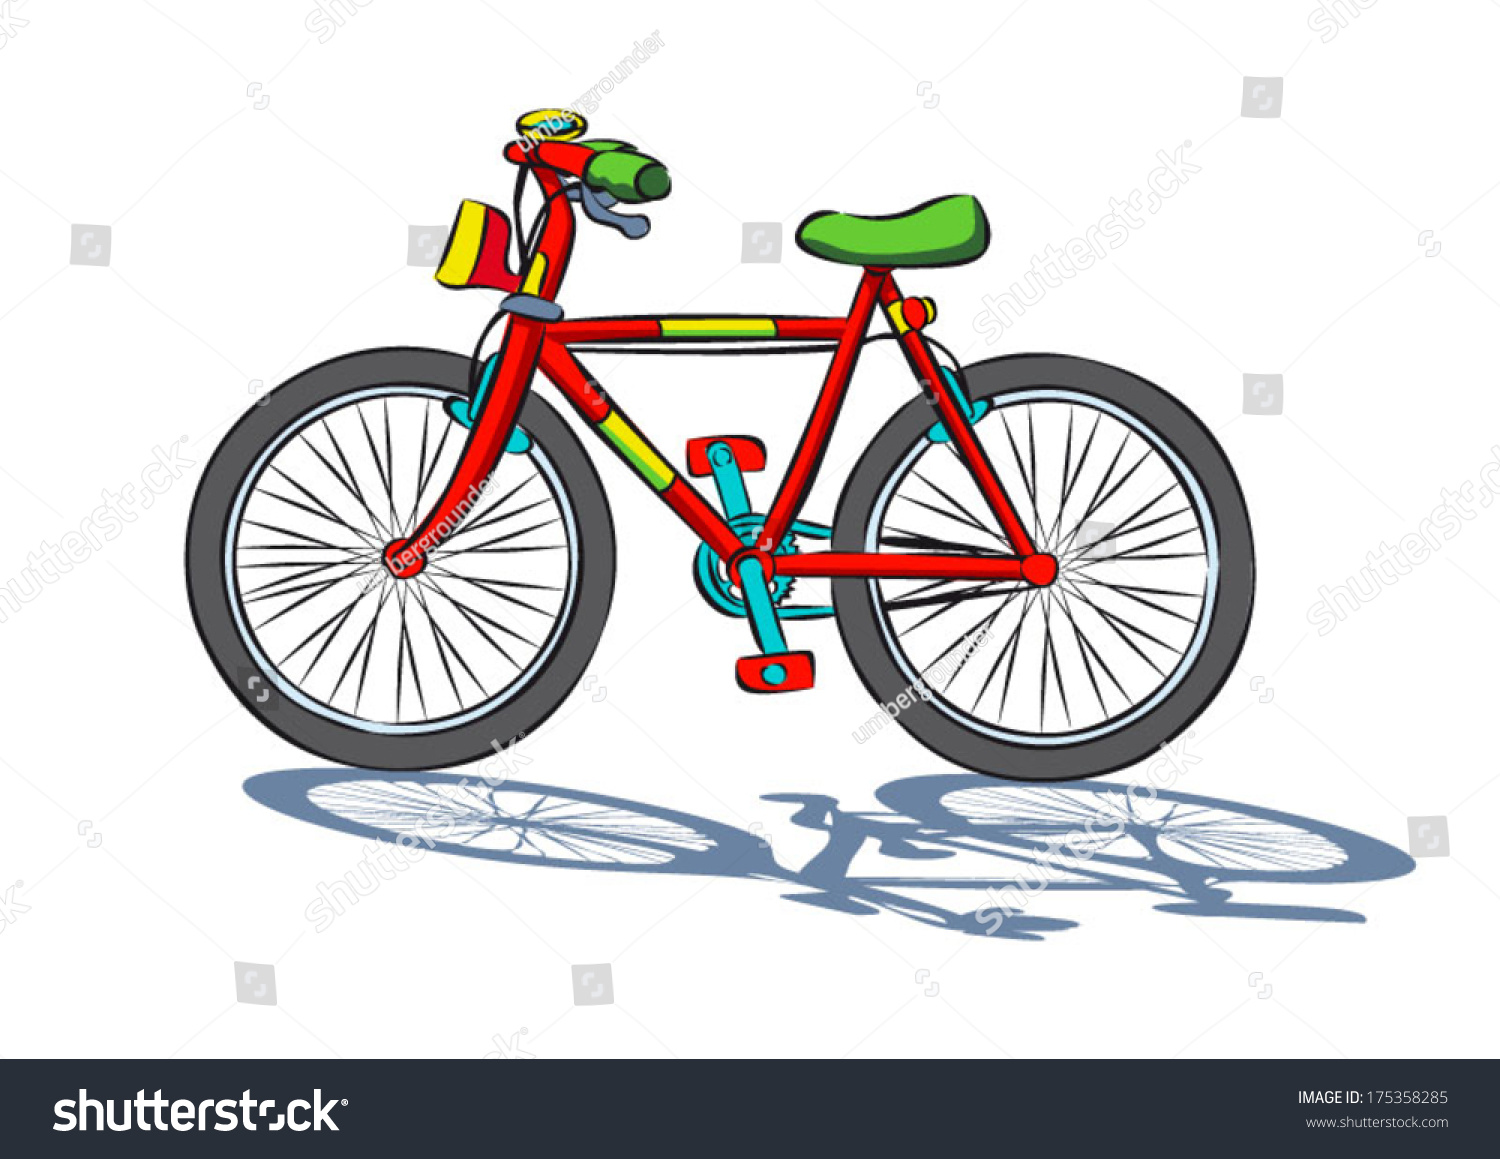 Велосипед из сказки